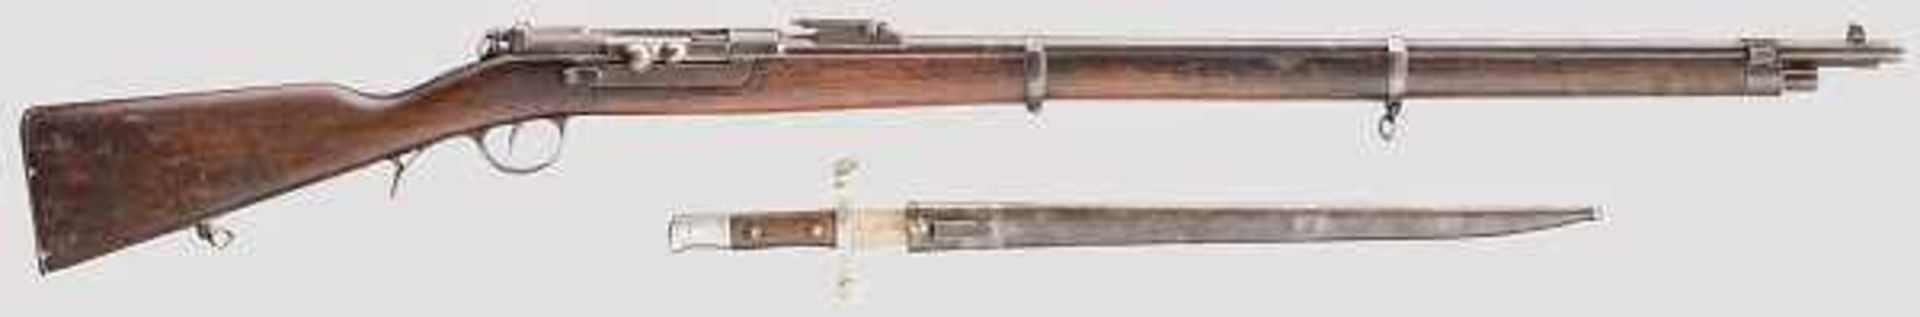 Gewehr Kropatschek M 1886 Kal. 8 x 60R, Nr. VV 535 . Schloss wie üblich nicht nummerngleich. Rauer